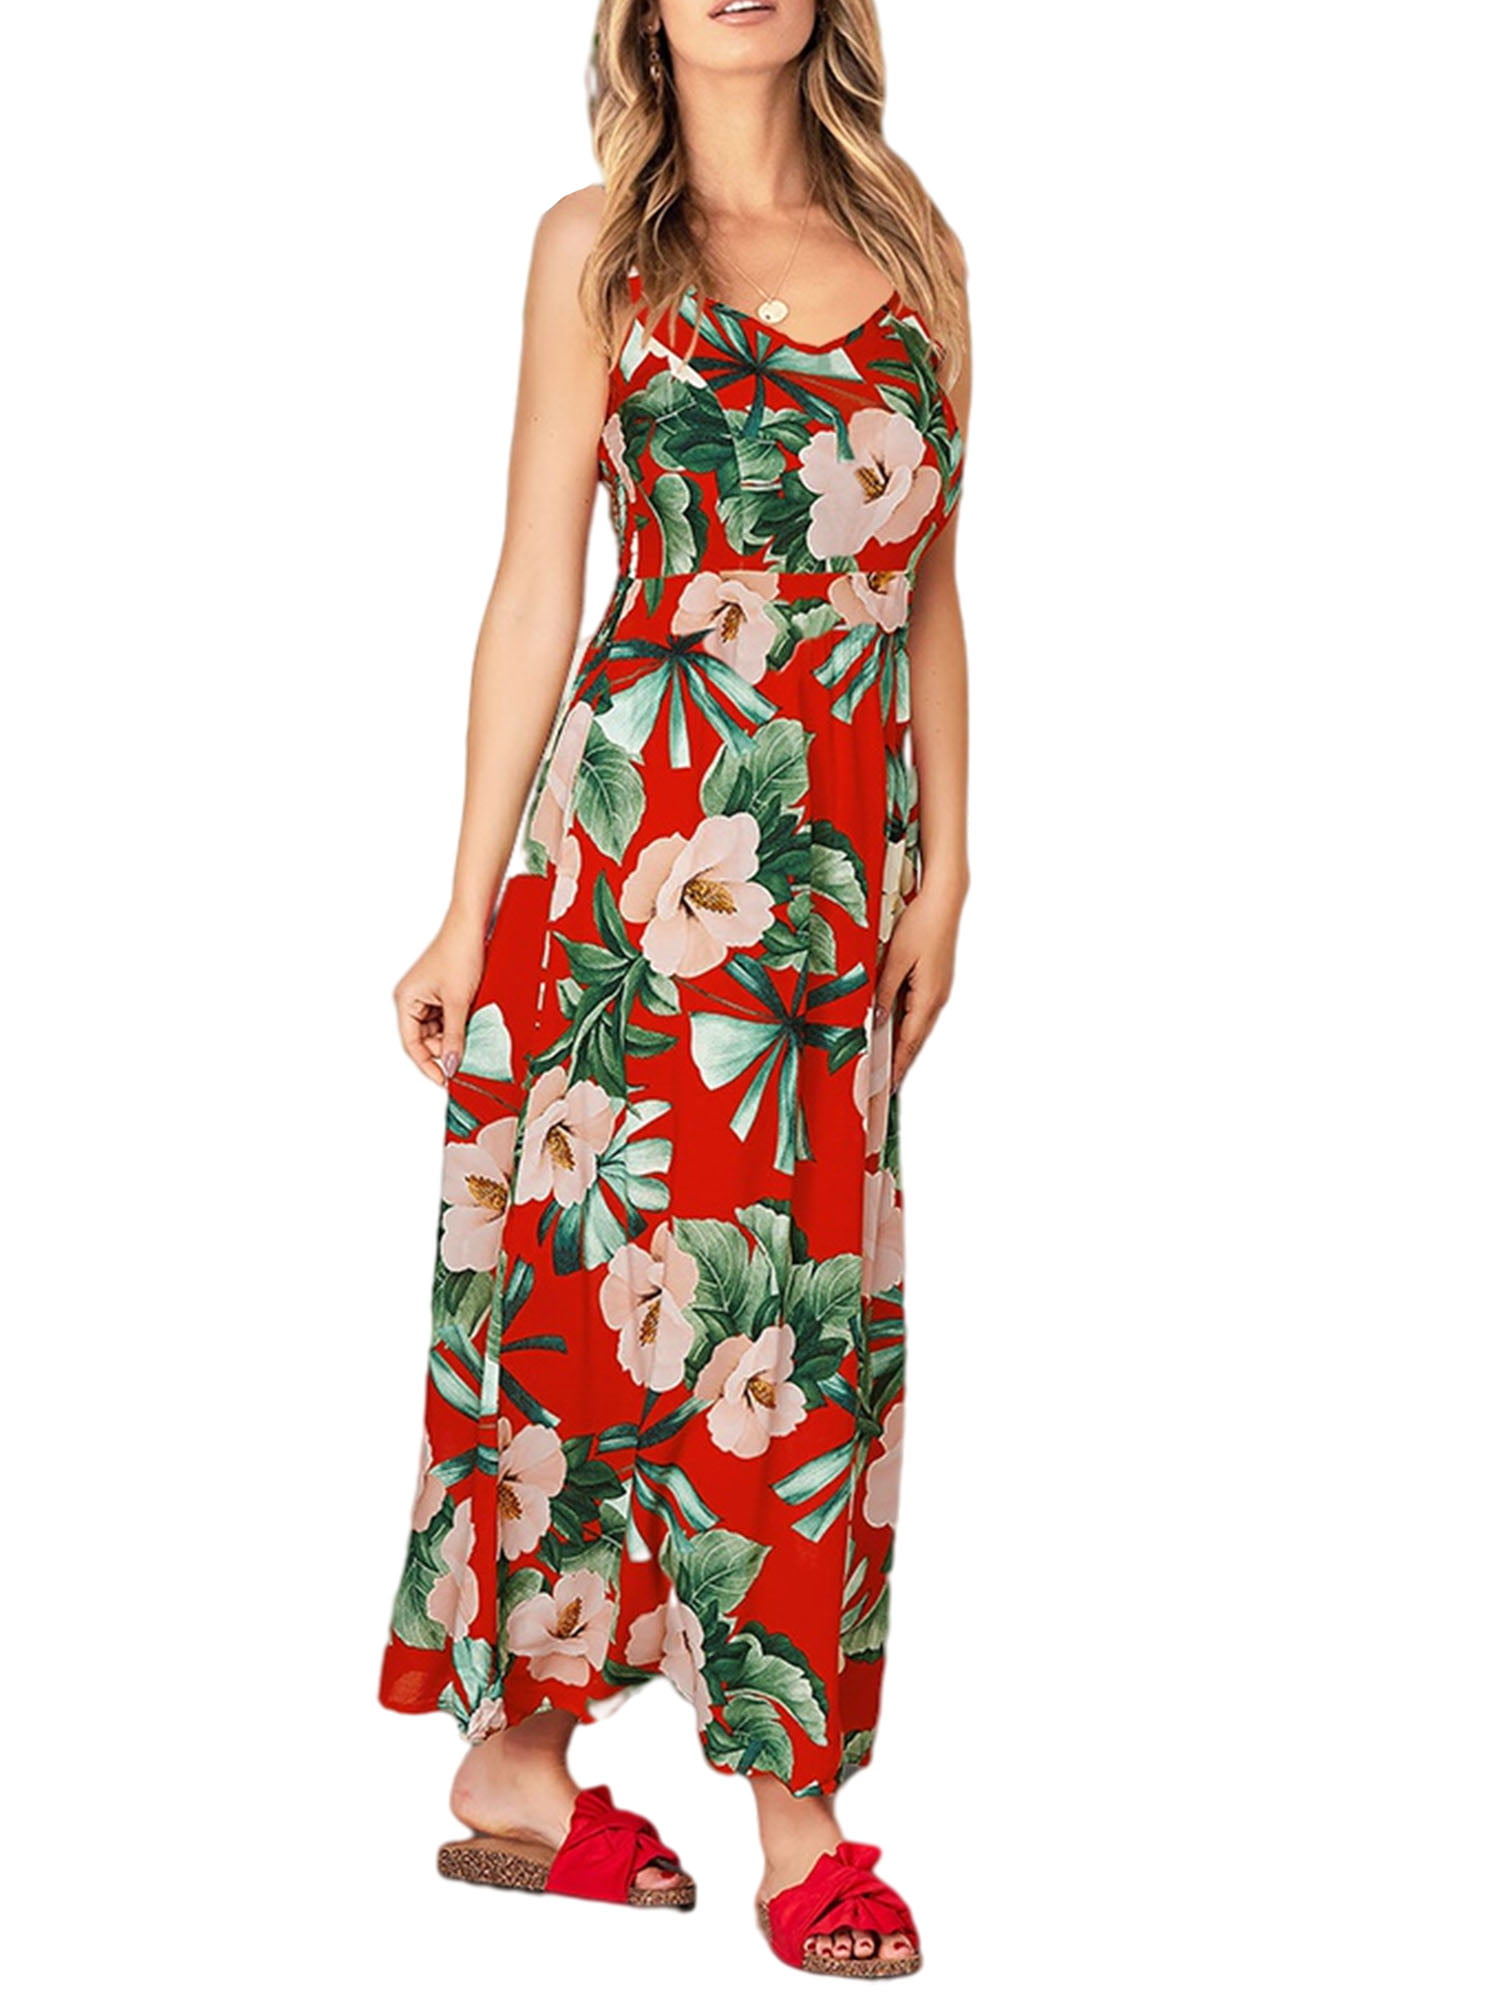 Buy > flowing beach dresses > in stock